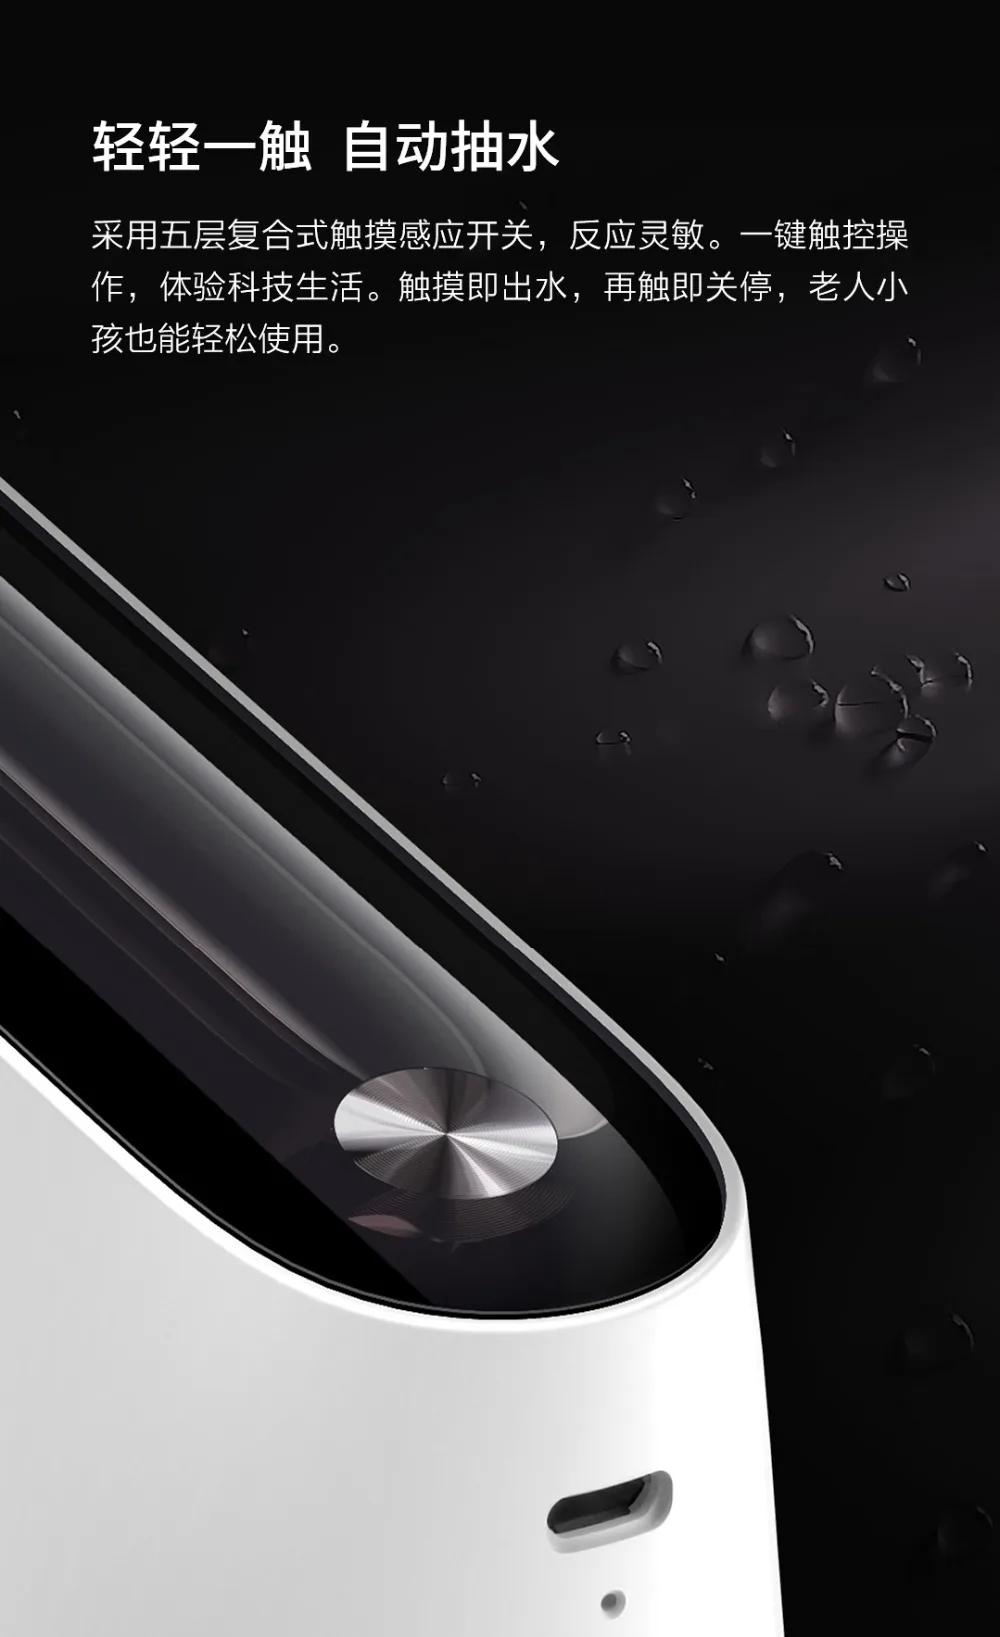 Xiaomi автоматический USB мини сенсорный выключатель водяной насос беспроводной Перезаряжаемый Электрический диспенсер водяной насос с USB кабелем